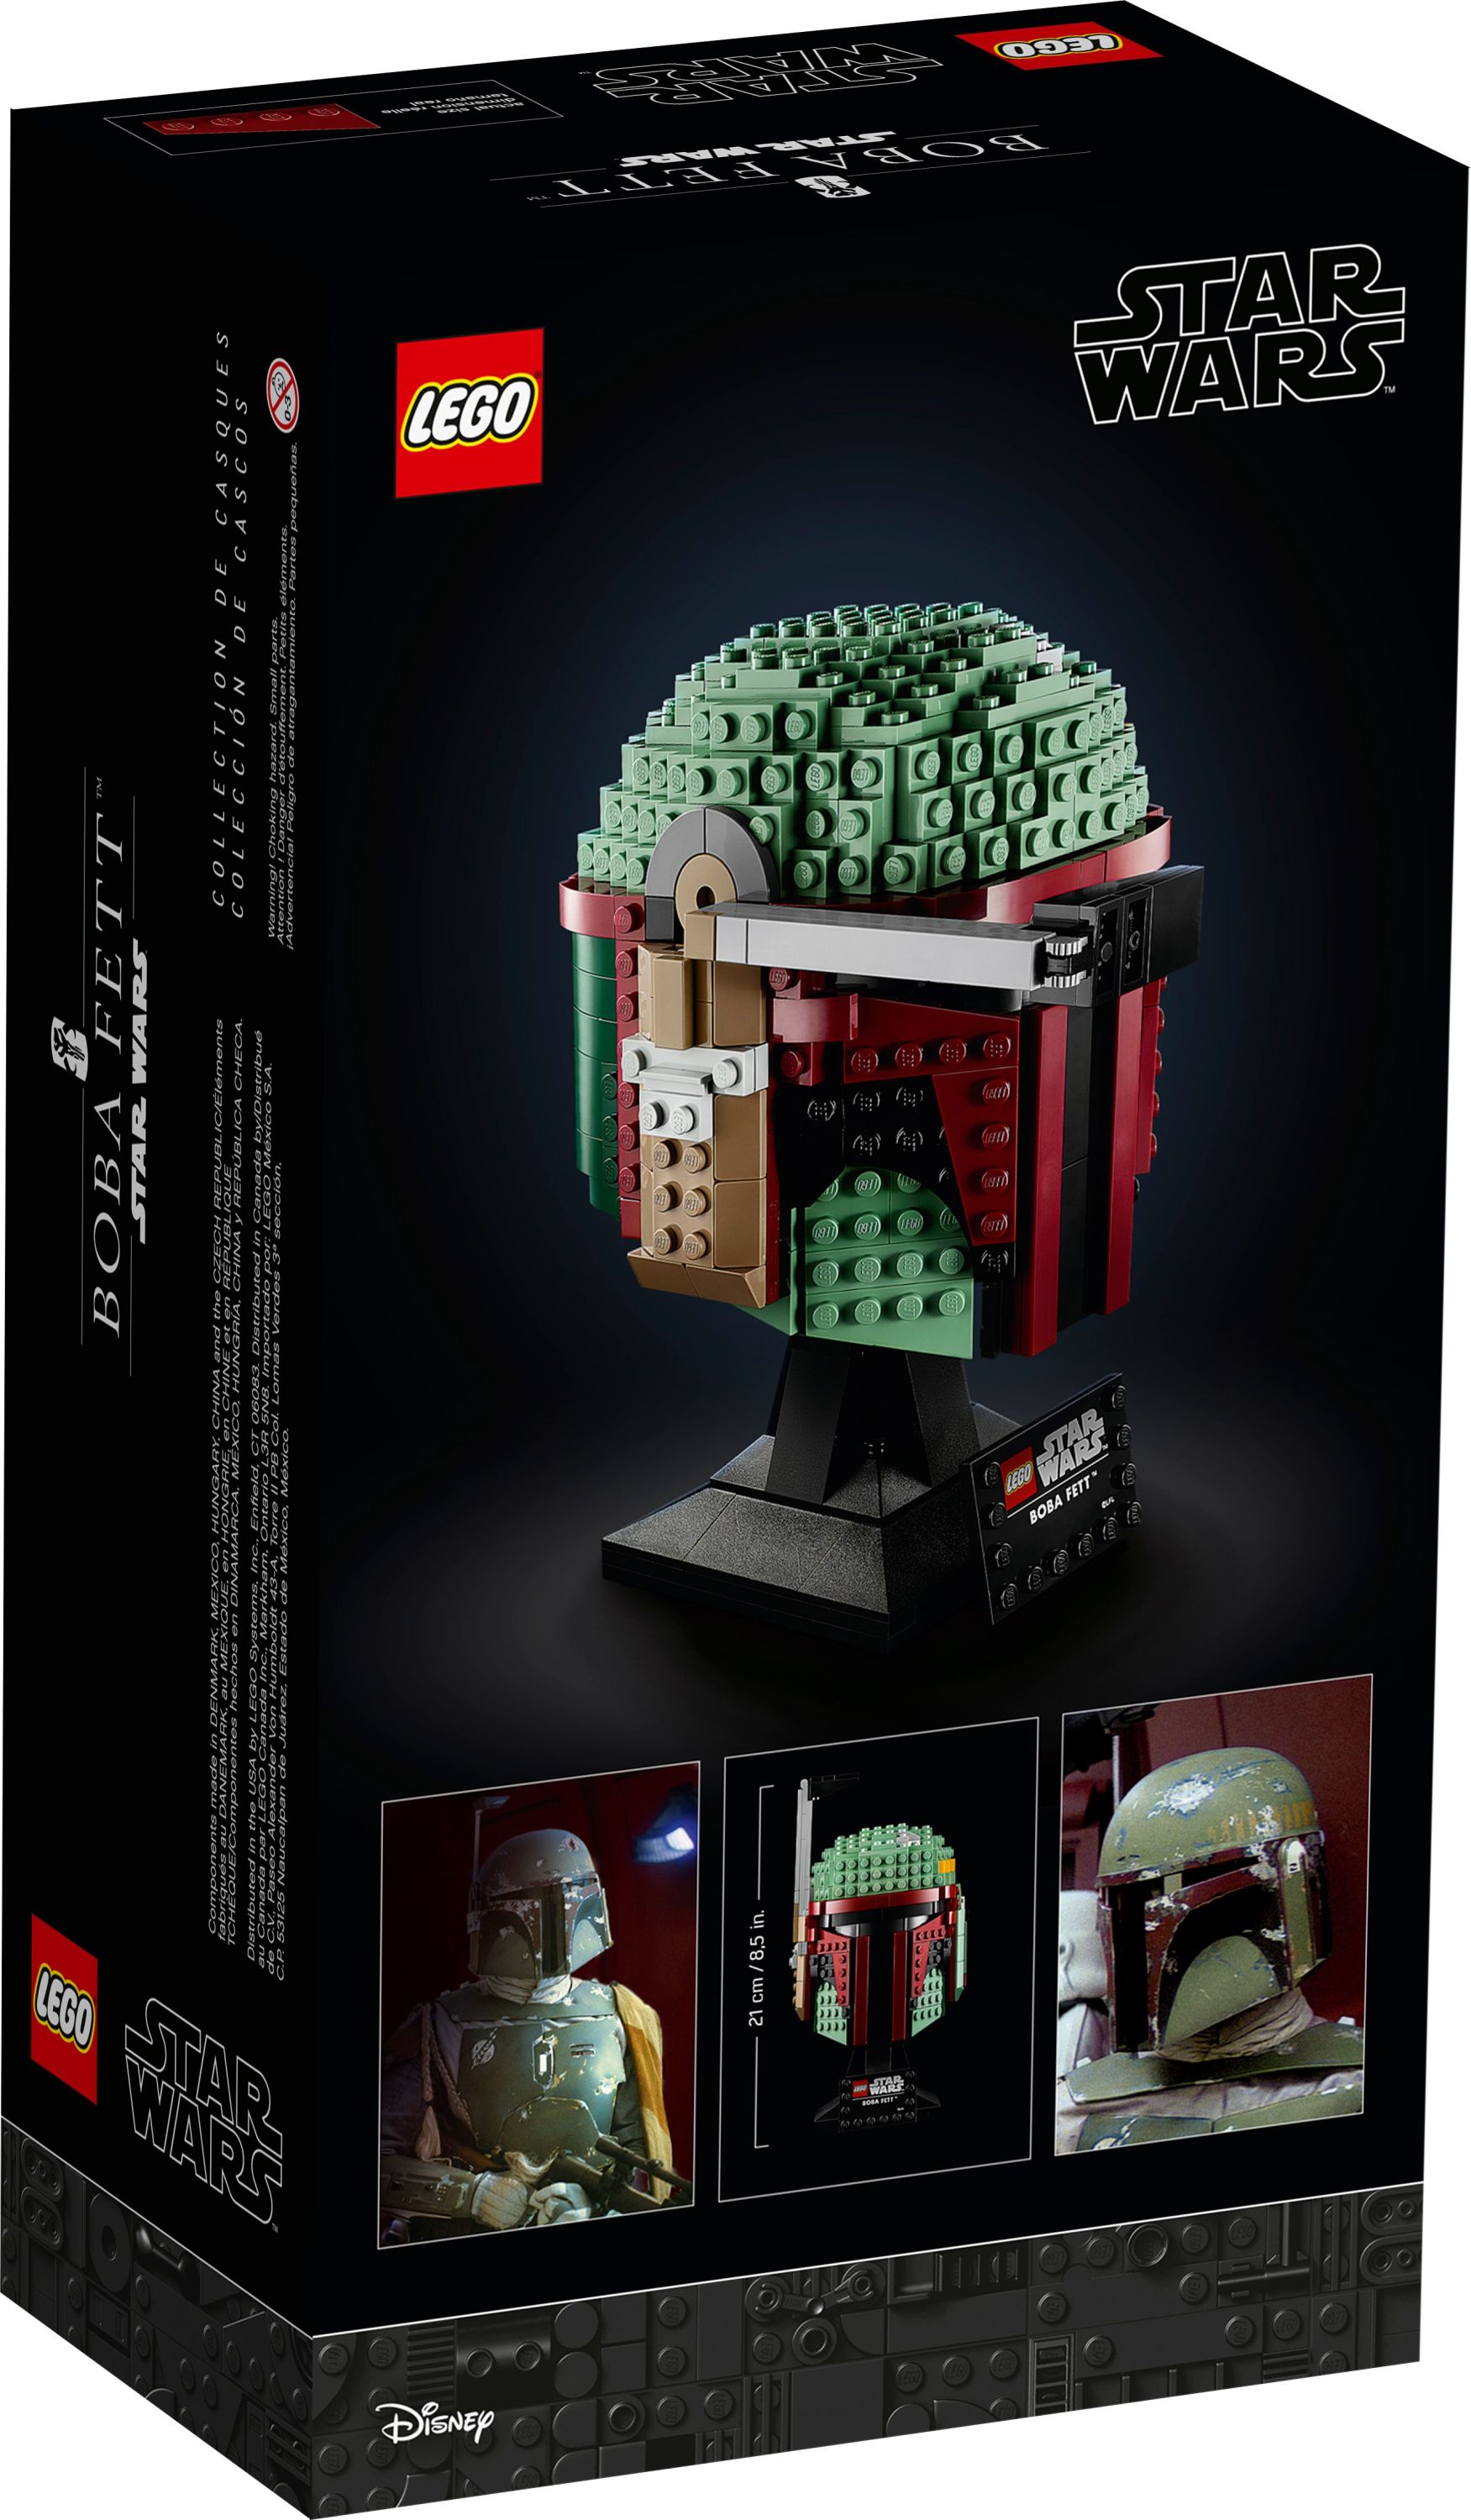 LEGO Star Wars Boba Fett Helmet 75277 Building Kit - image 4 of 6